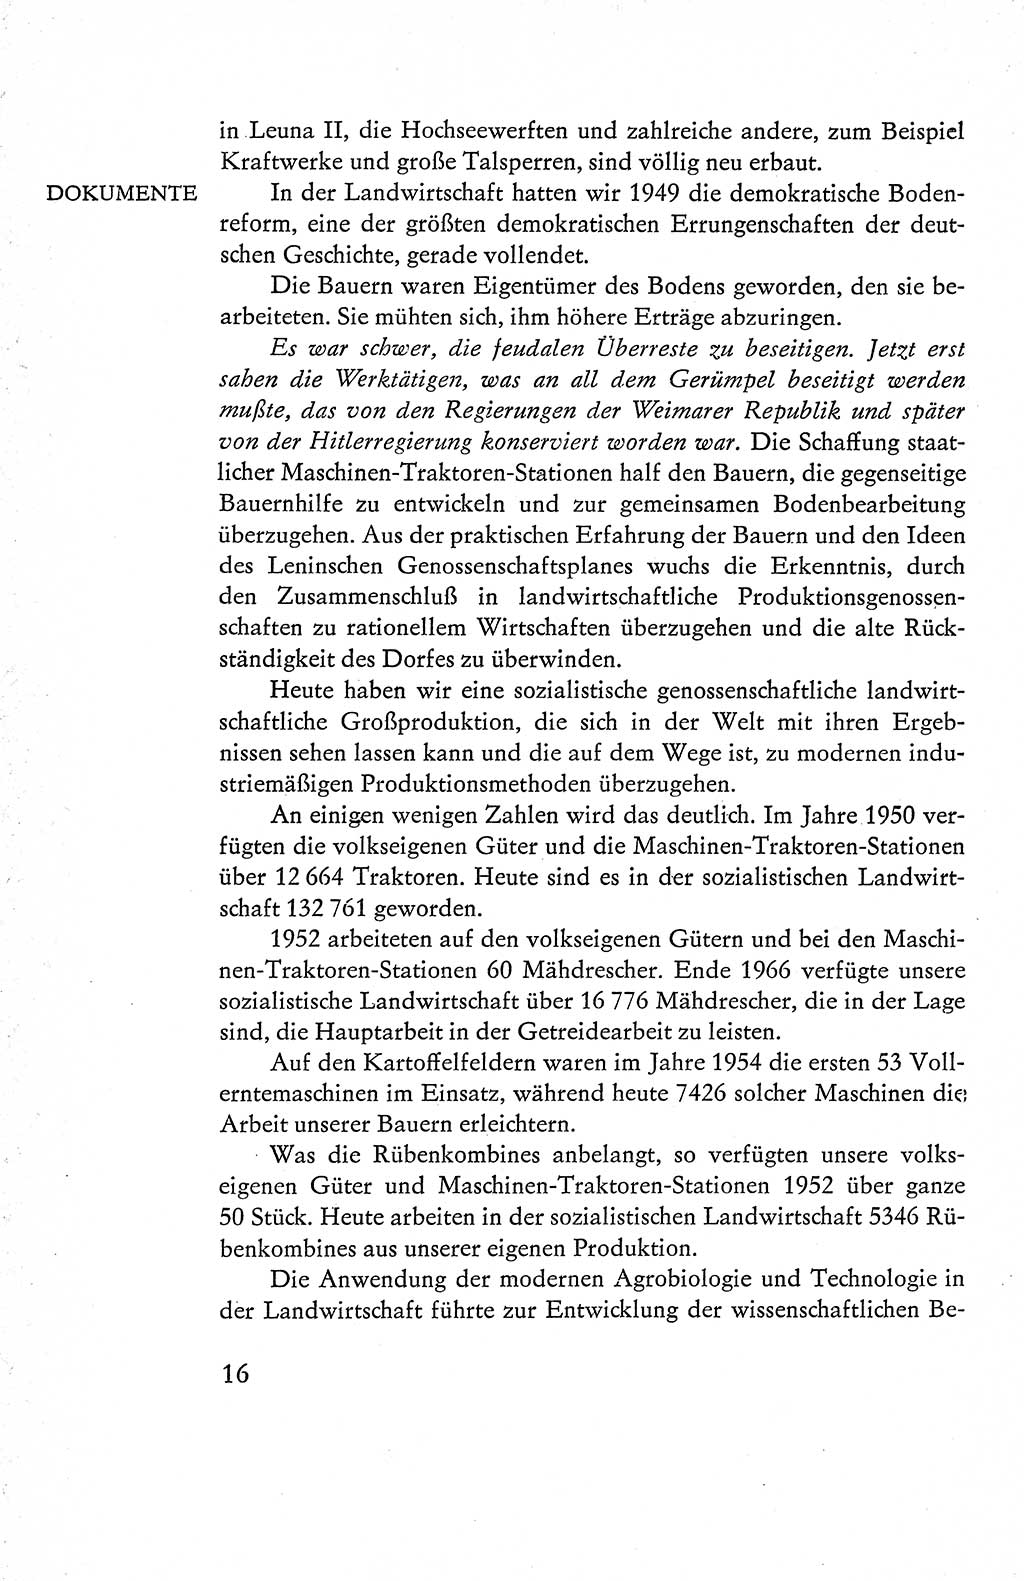 Verfassung der Deutschen Demokratischen Republik (DDR), Dokumente, Kommentar 1969, Band 1, Seite 16 (Verf. DDR Dok. Komm. 1969, Bd. 1, S. 16)